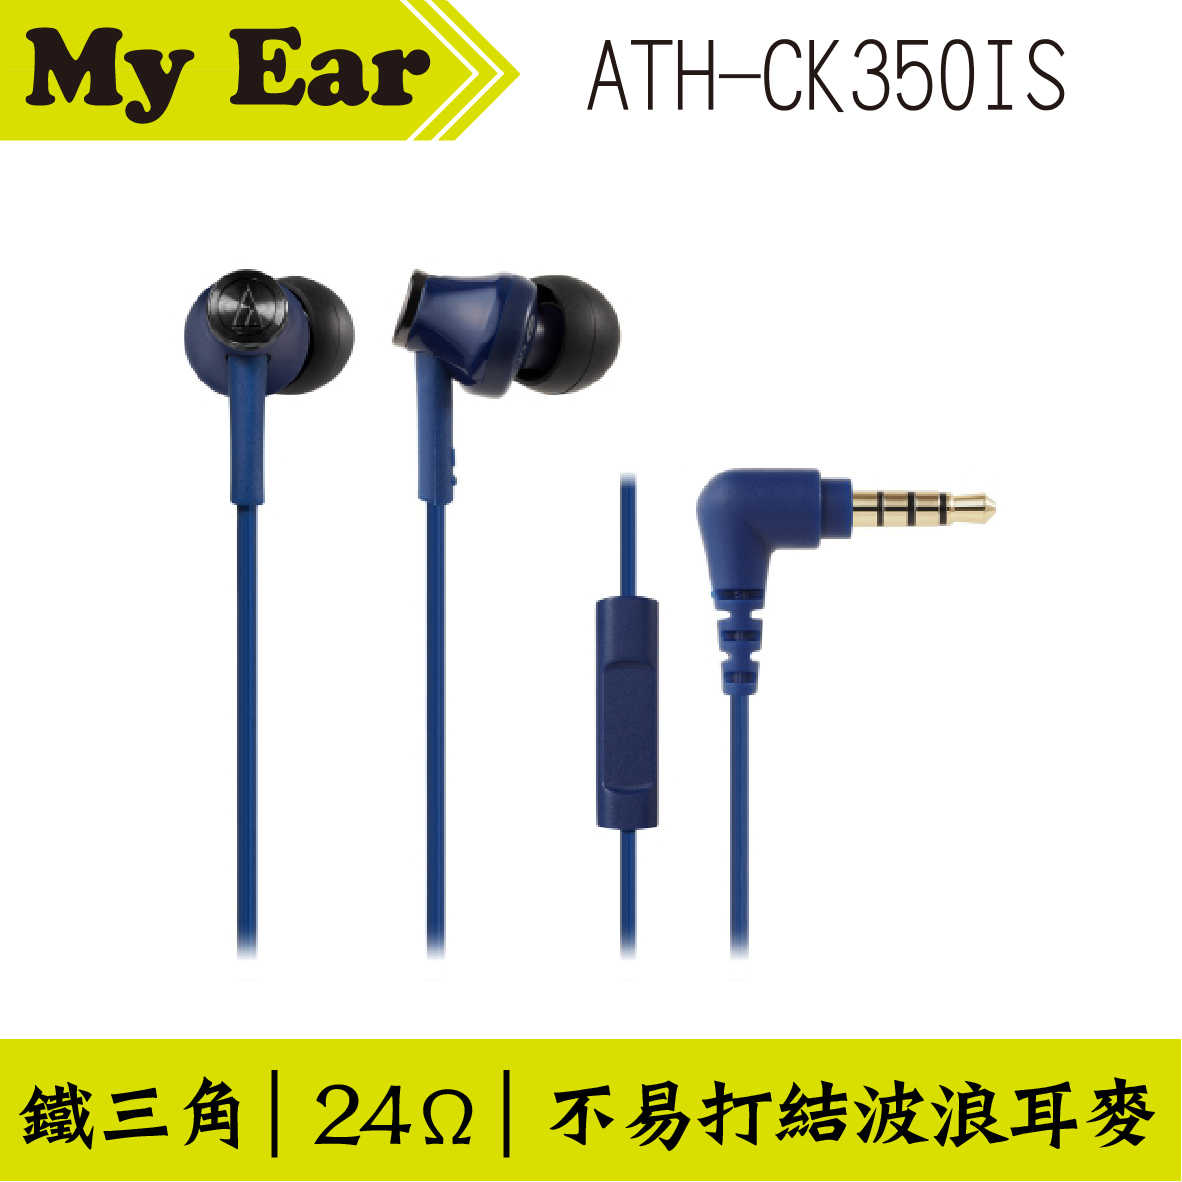 鐵三角 ATH-CK350IS 耳機麥克風 多色可選  | My Ear 耳機專門店